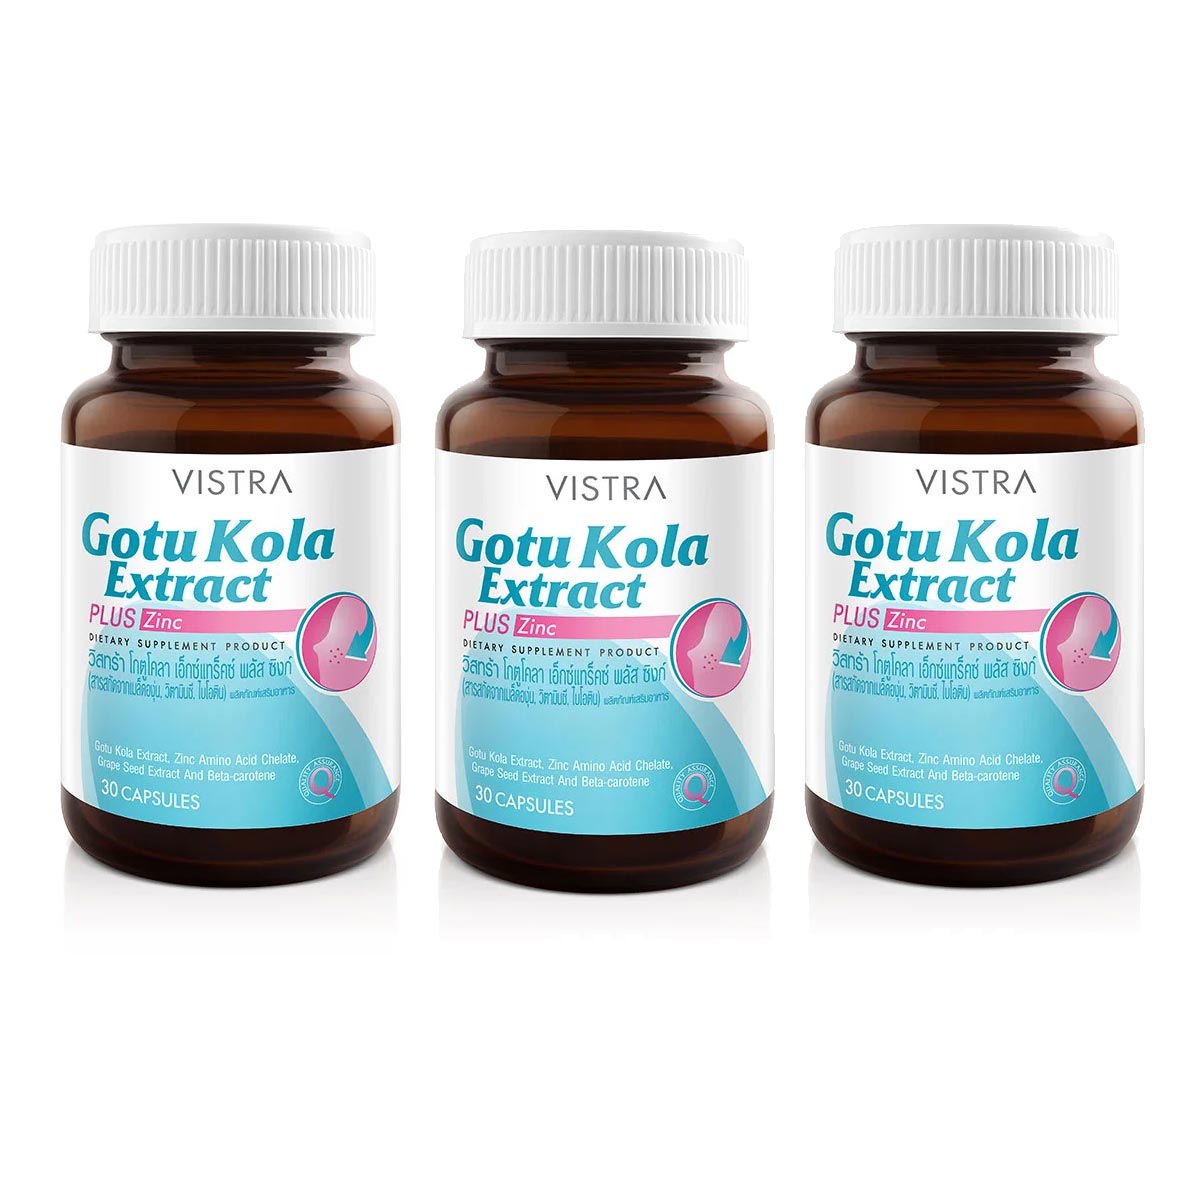 Пищевая добавка Vistra Gotu Kola Extract Plus Zinc, 3 банки по 30 капсул набор пищевых добавок vistra gotu kola extract plus zinc kiwi extract 50 mg 2 банки по 30 капсул